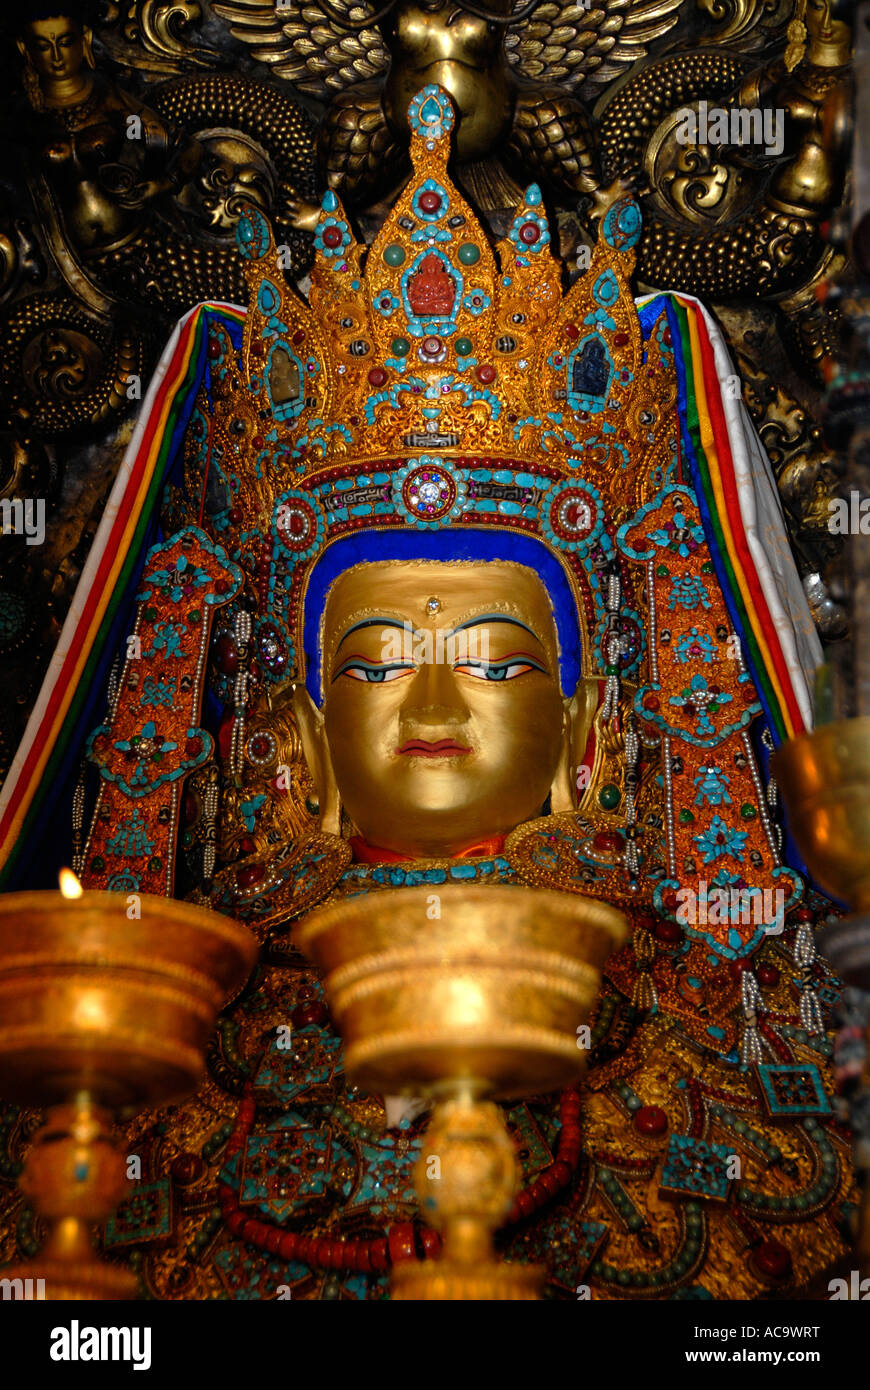 Le bouddhisme tibétain figure sainte Jowo Shakiamuni Lhasa Jokhang Tibet Chine Banque D'Images